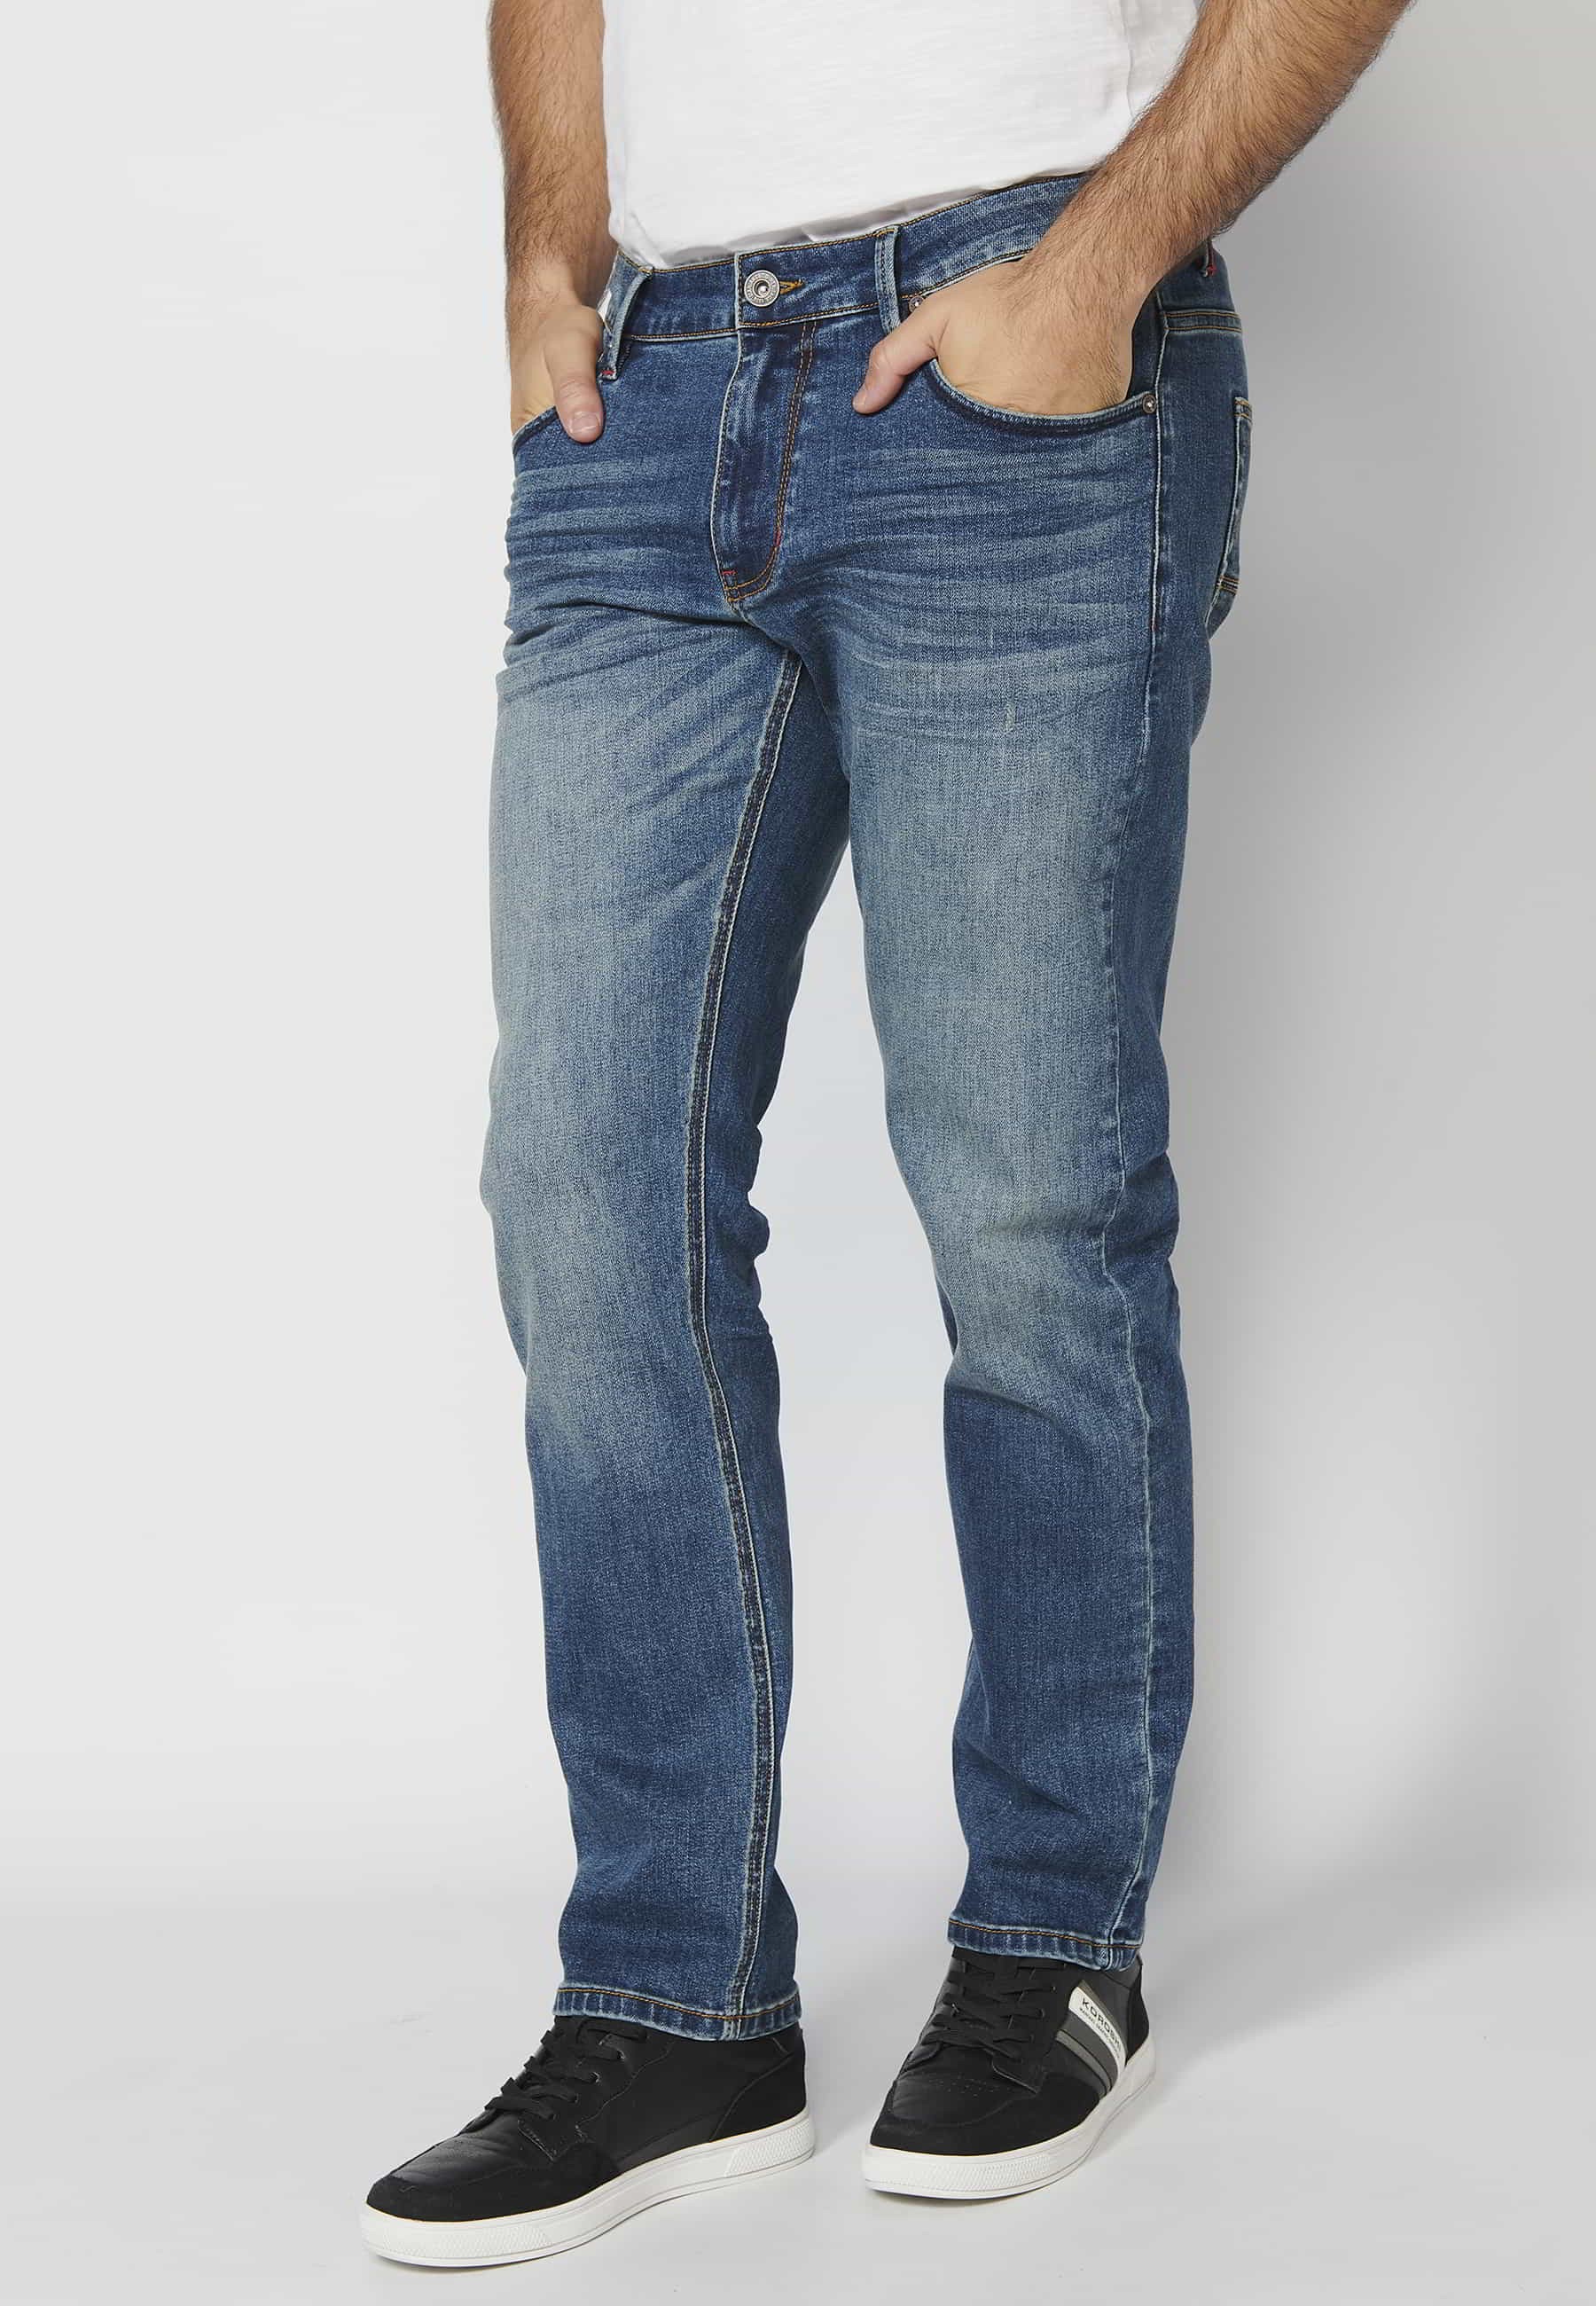 Pantalons llargs jeans strech regular fit amb cinc butxaques color blau per a home